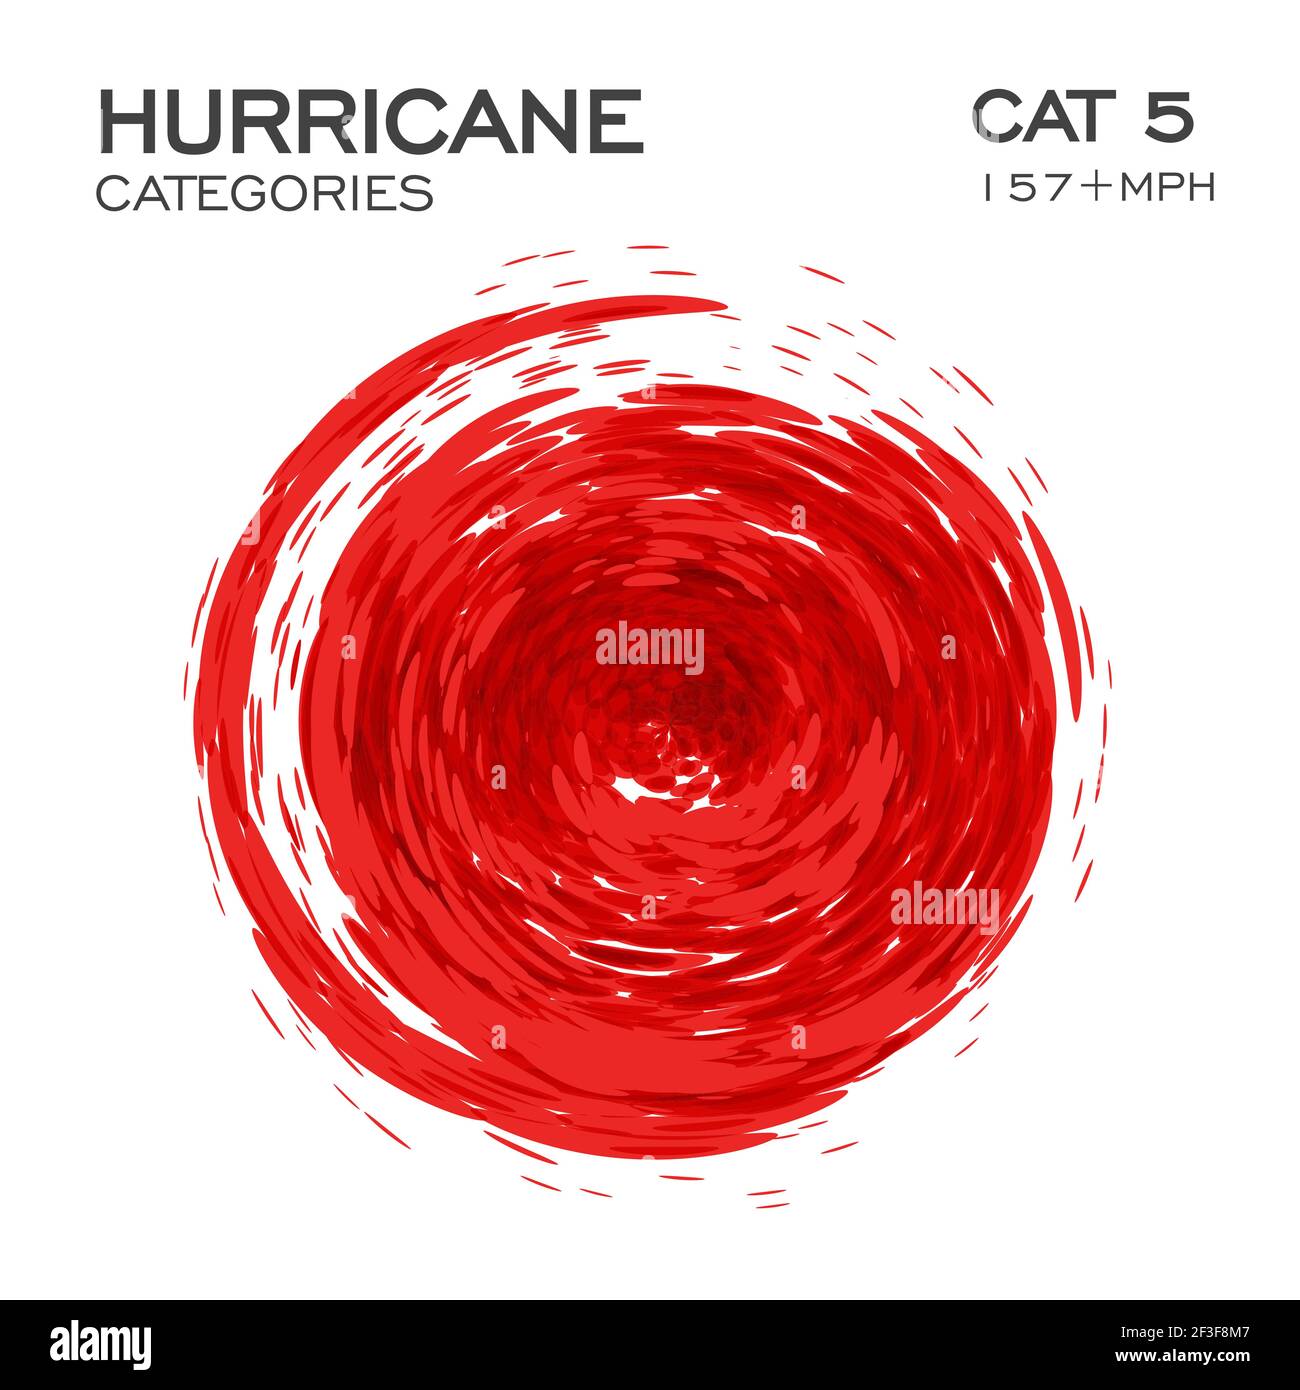 Categoria 5 elemento infografico dell'uragano per le notizie e l'avvertimento di rottura dell'uragano. Imbuto di turbolenza di nuvole e polvere, illustrazione vettoriale. Illustrazione Vettoriale